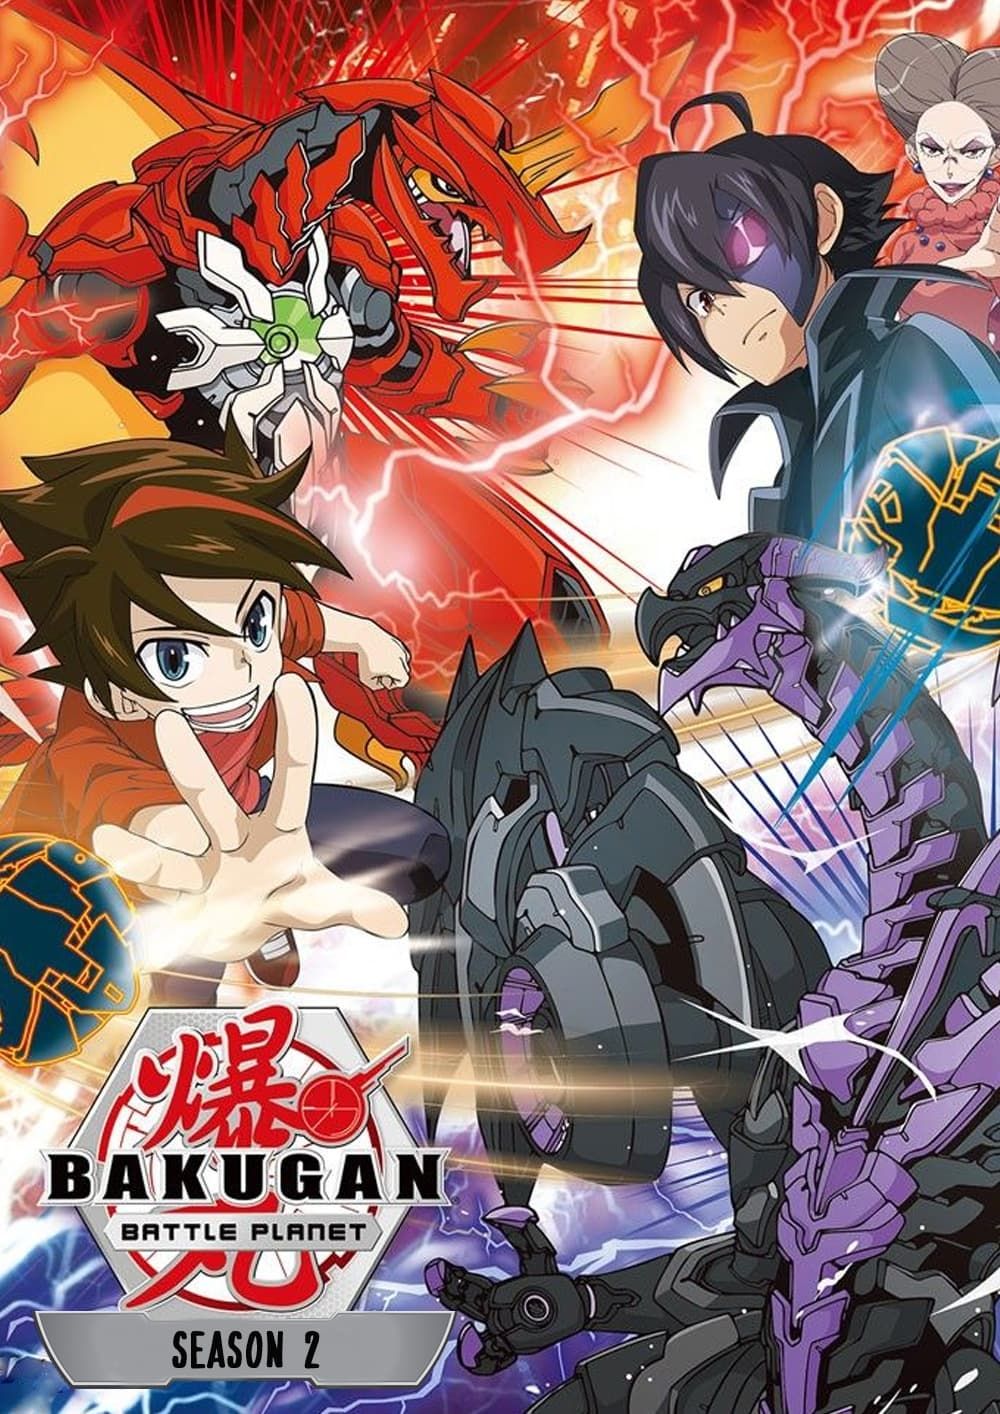 Watch Bakugan: Battle Planet on